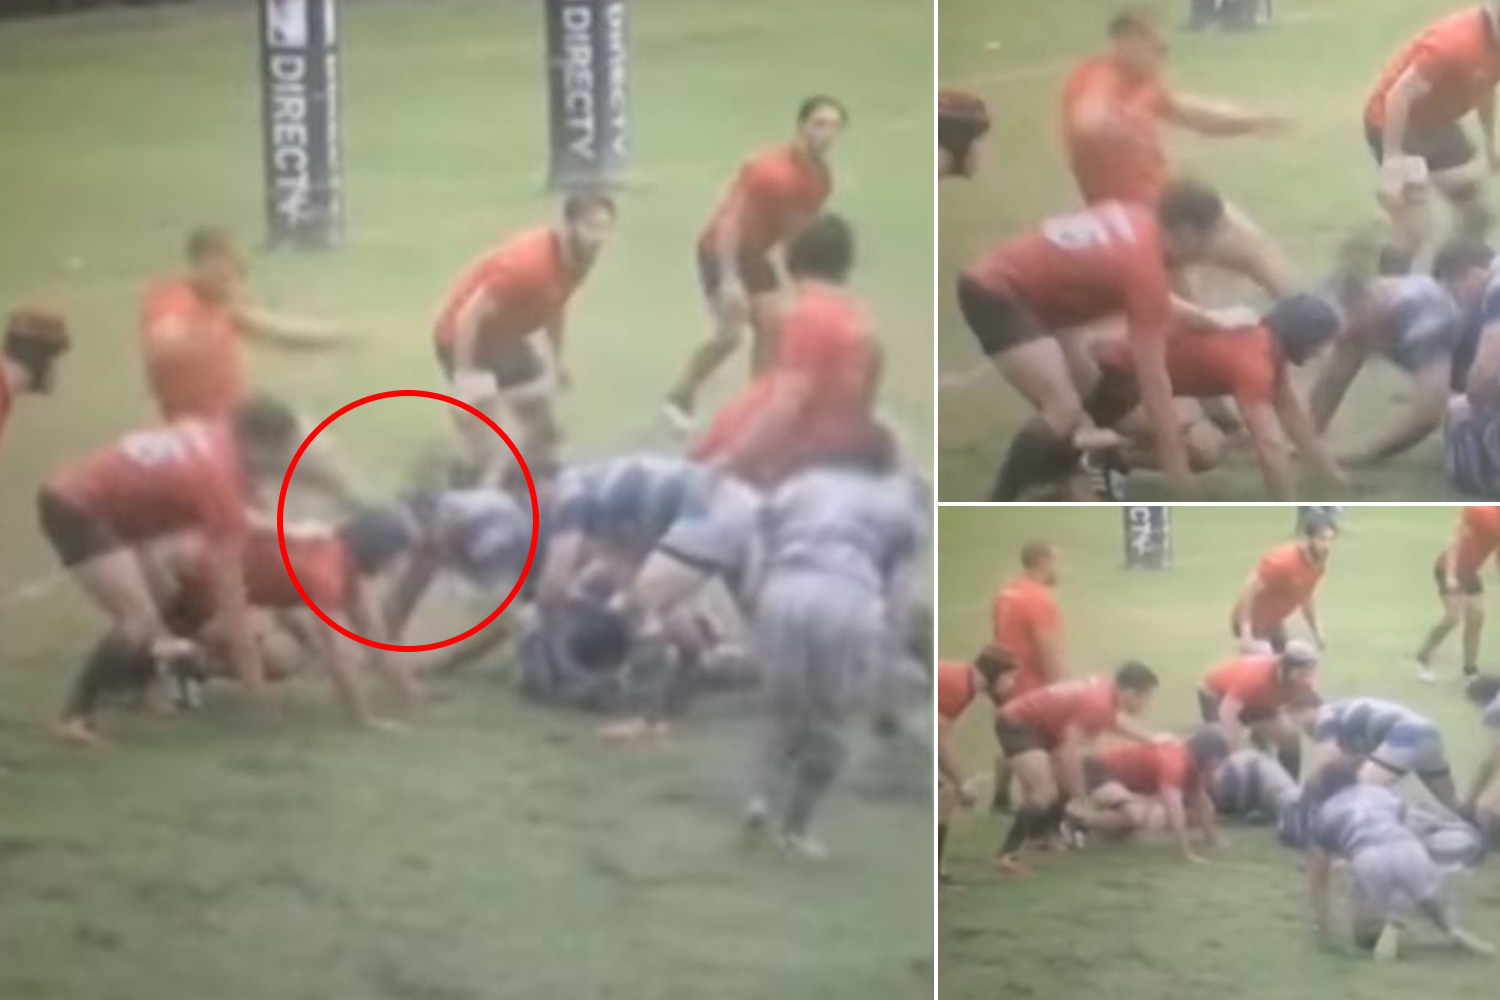  (Video) Suspenden 29 años a jugador de rugby por salvaje patada